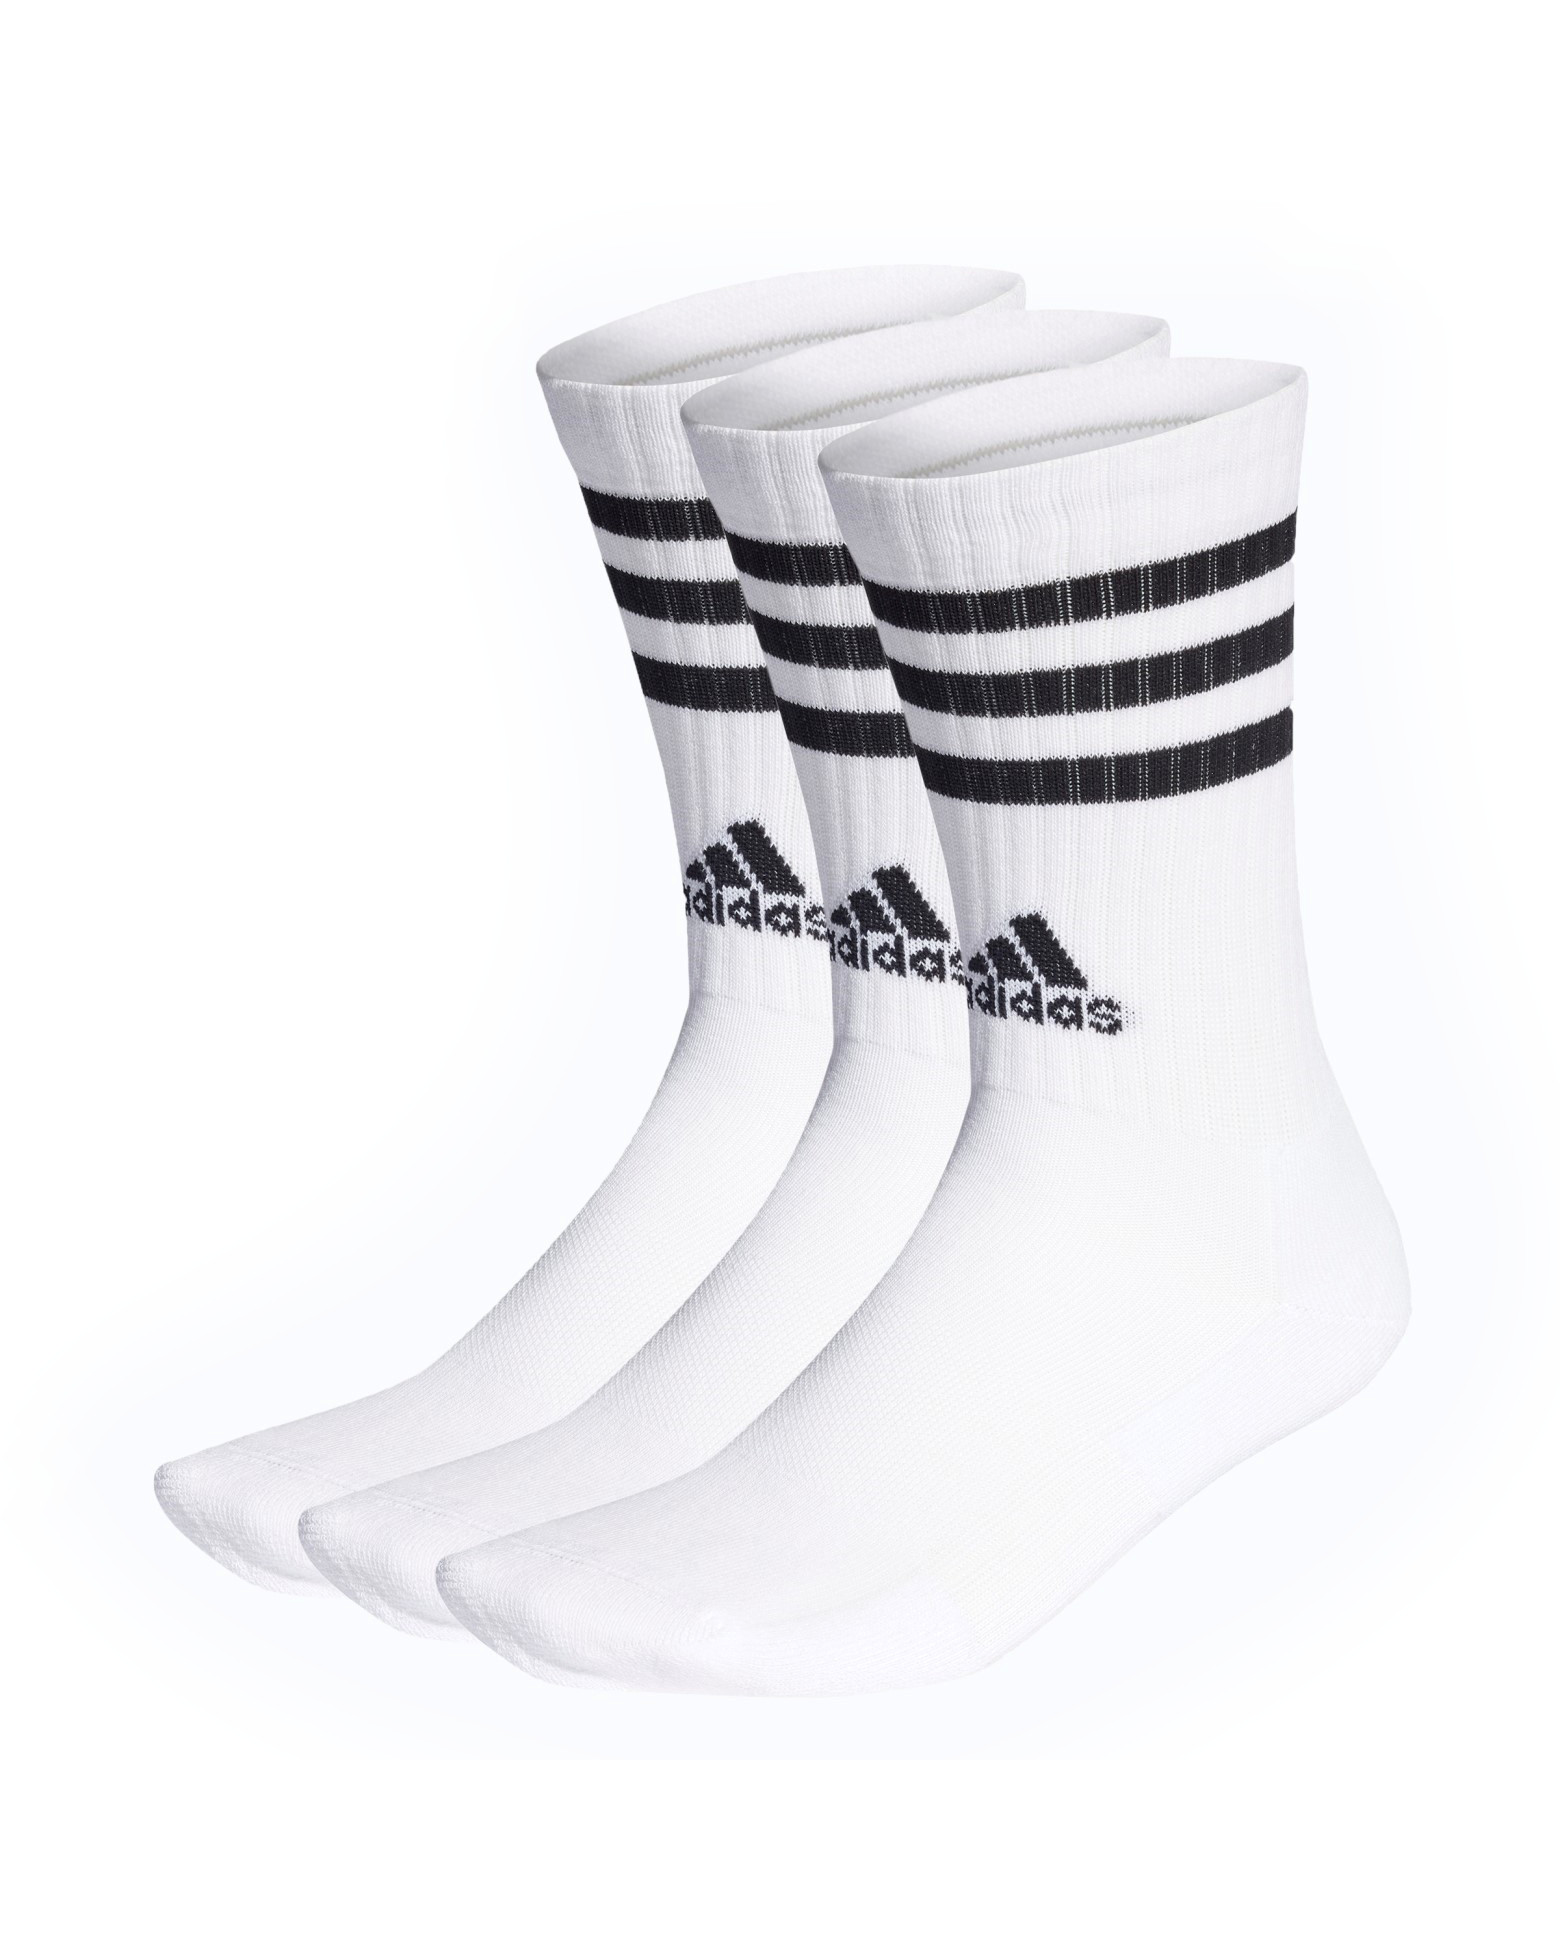 Носки Adidas для женщин, размер L, чёрные, белые, HT3458, 3 пары